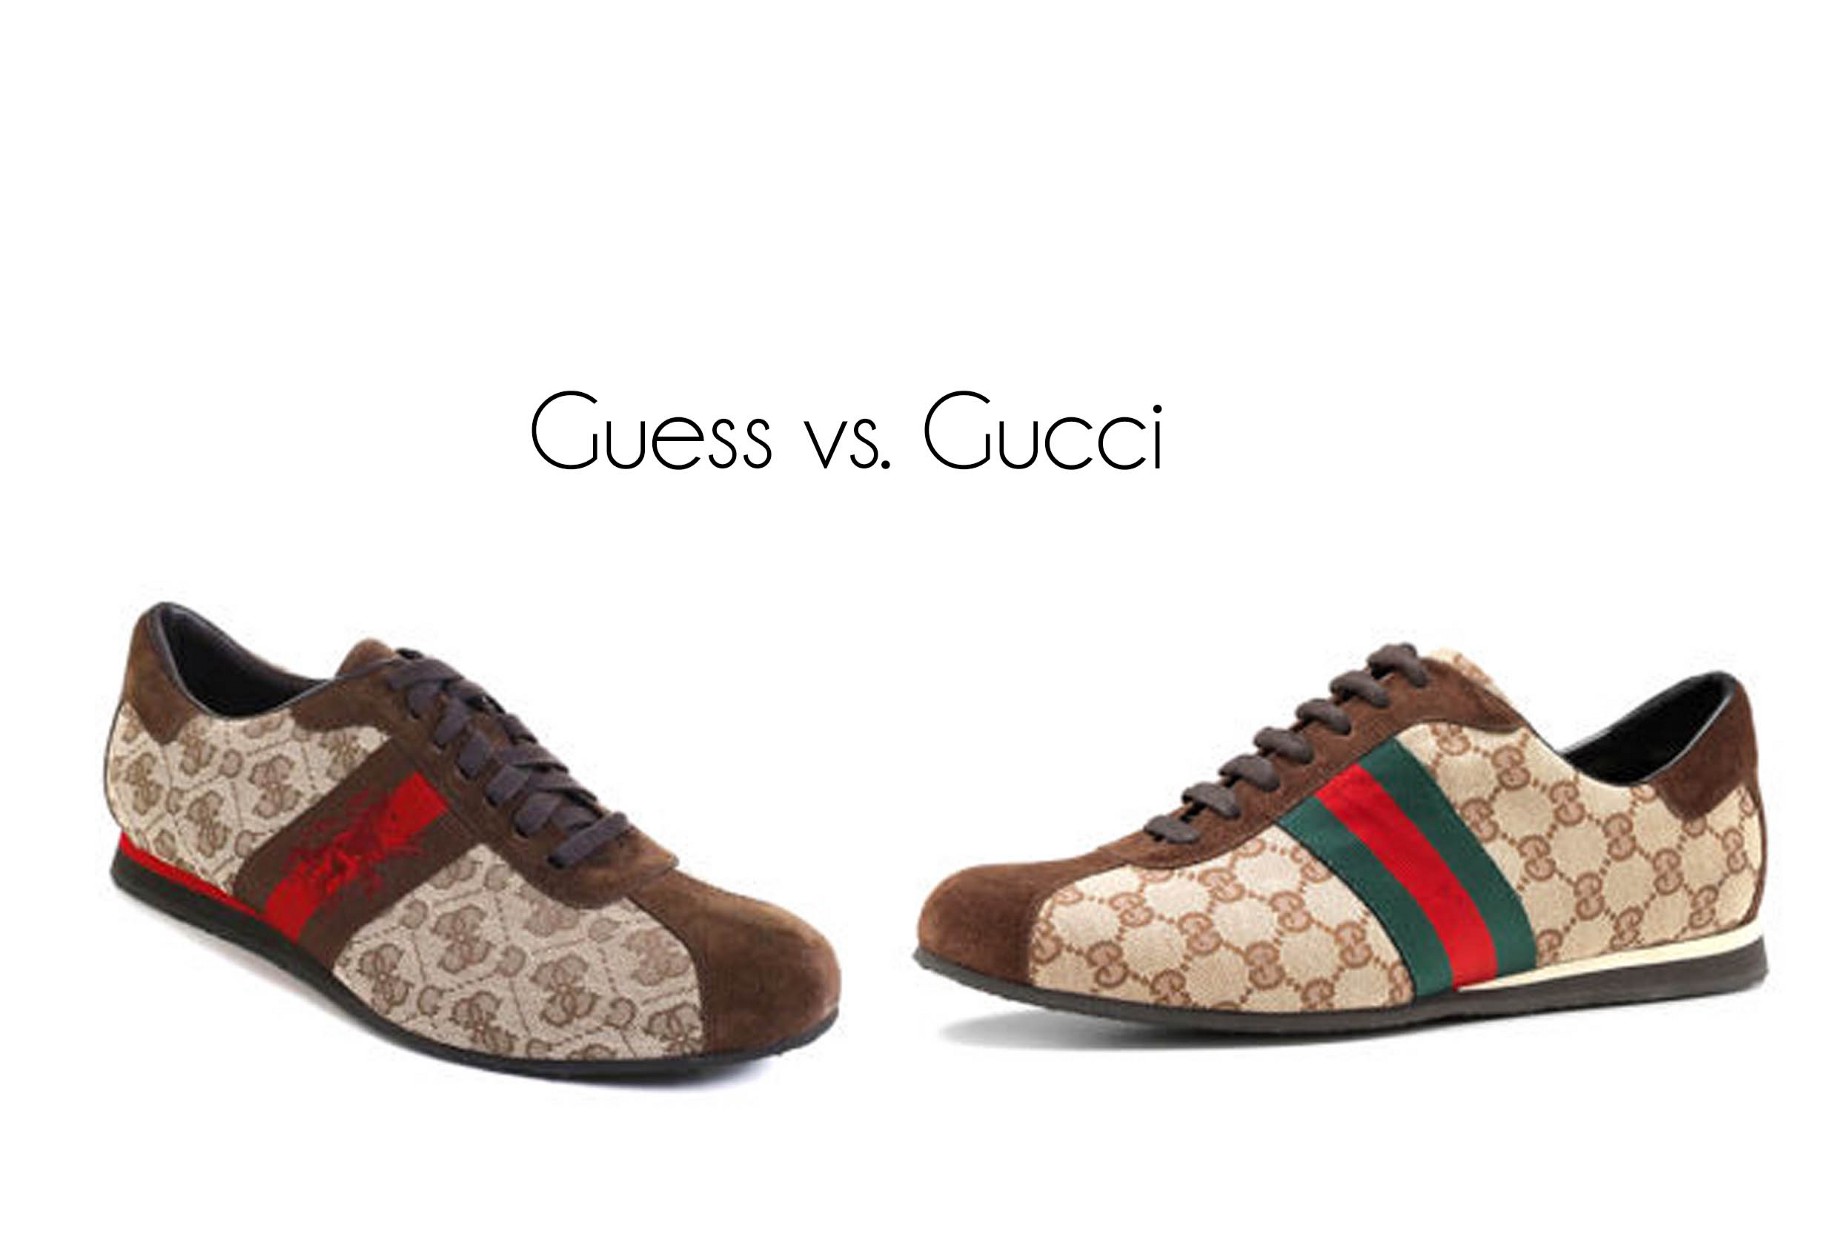 Gucci vs Guess